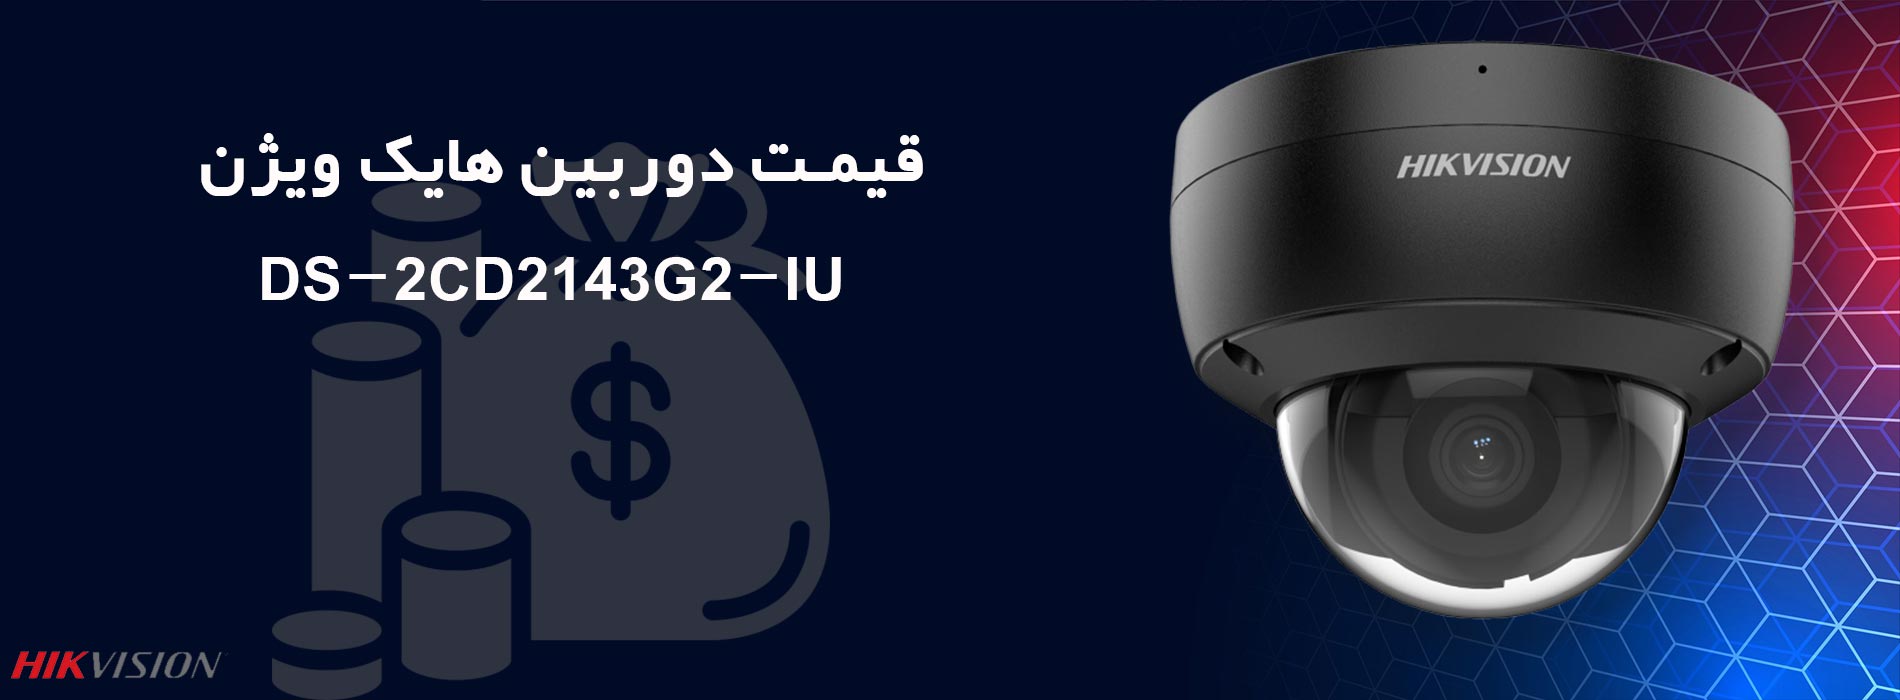 قیمت دوربین هایک ویژن DS-2CD2143G2-IU در بازار ایران چقدر است؟